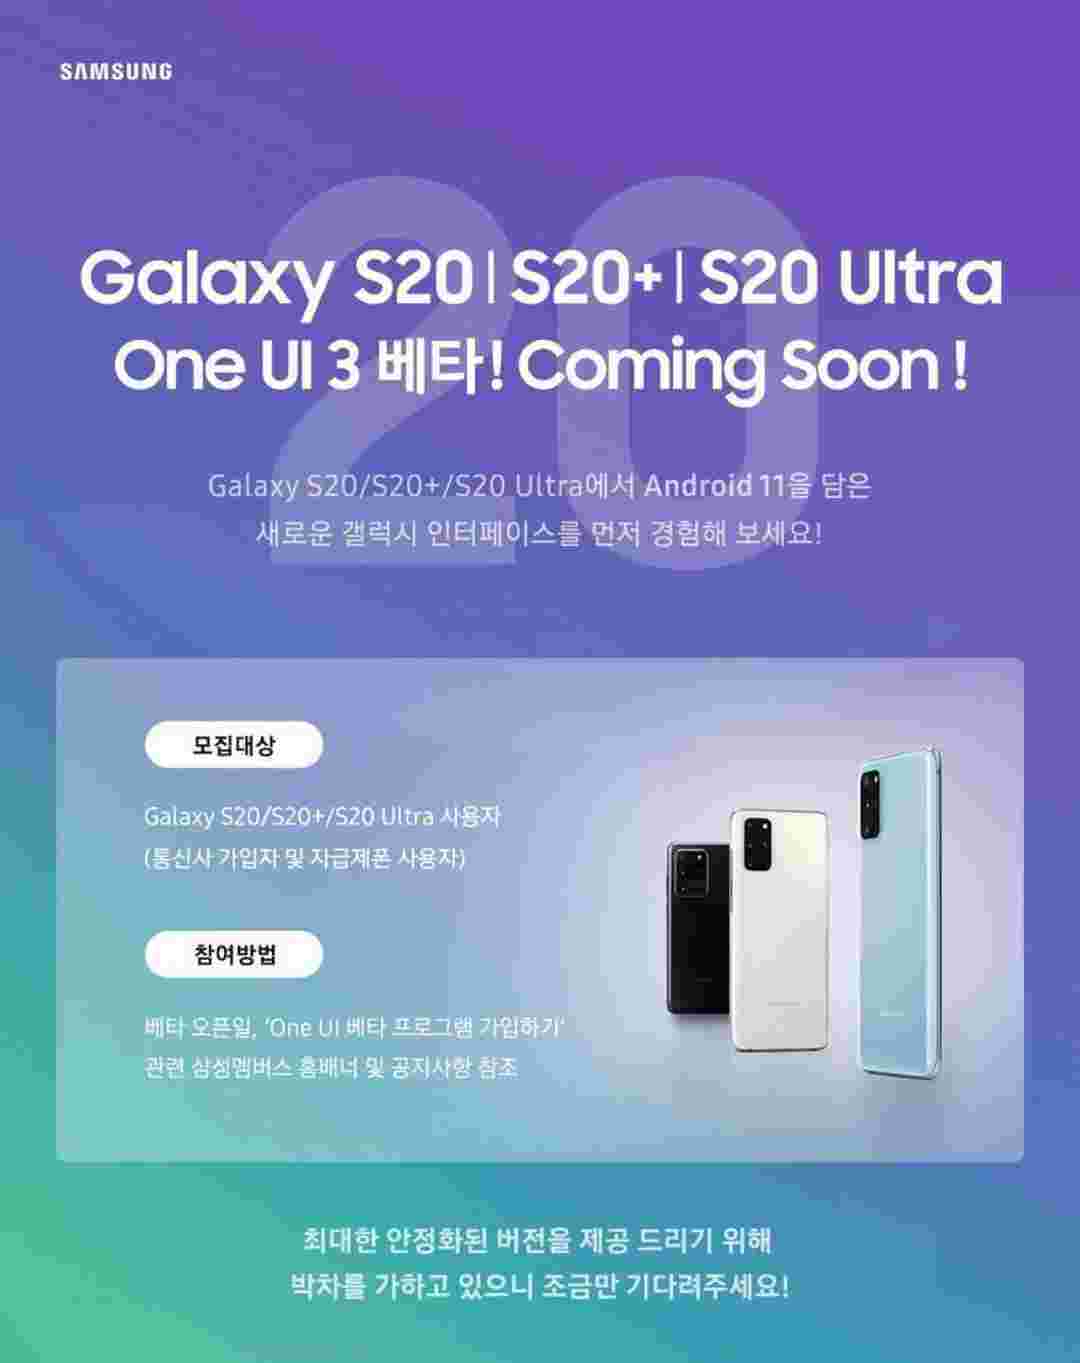 三星表示，公共一UI 3.0 Beta即将推出Galaxy S20阵容